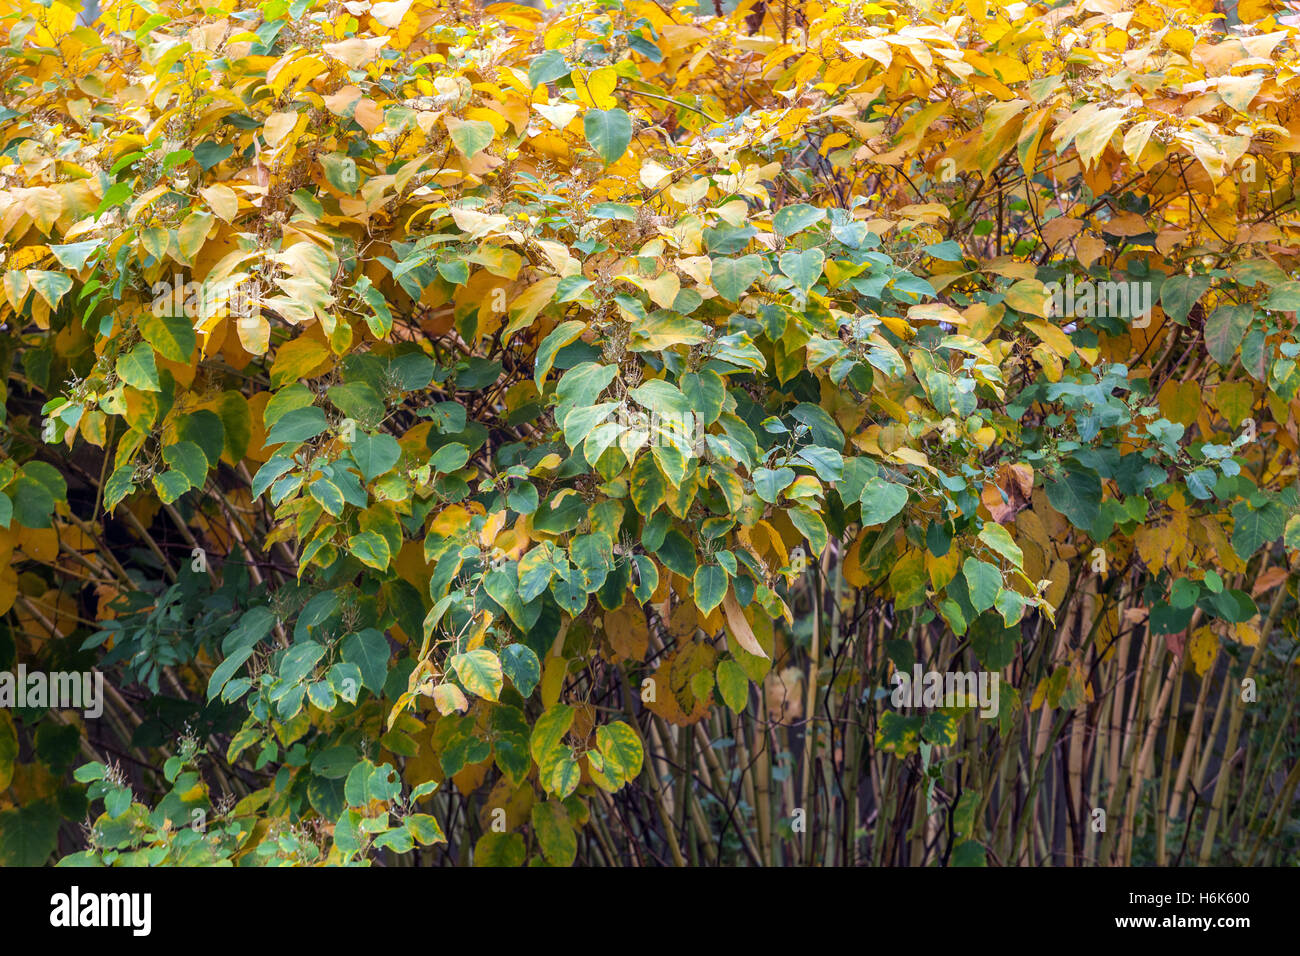 Japanese Knotweed Fallopia japonica, Reynoutria japonica), couleurs d'automne, plantes envahissantes brousse Banque D'Images